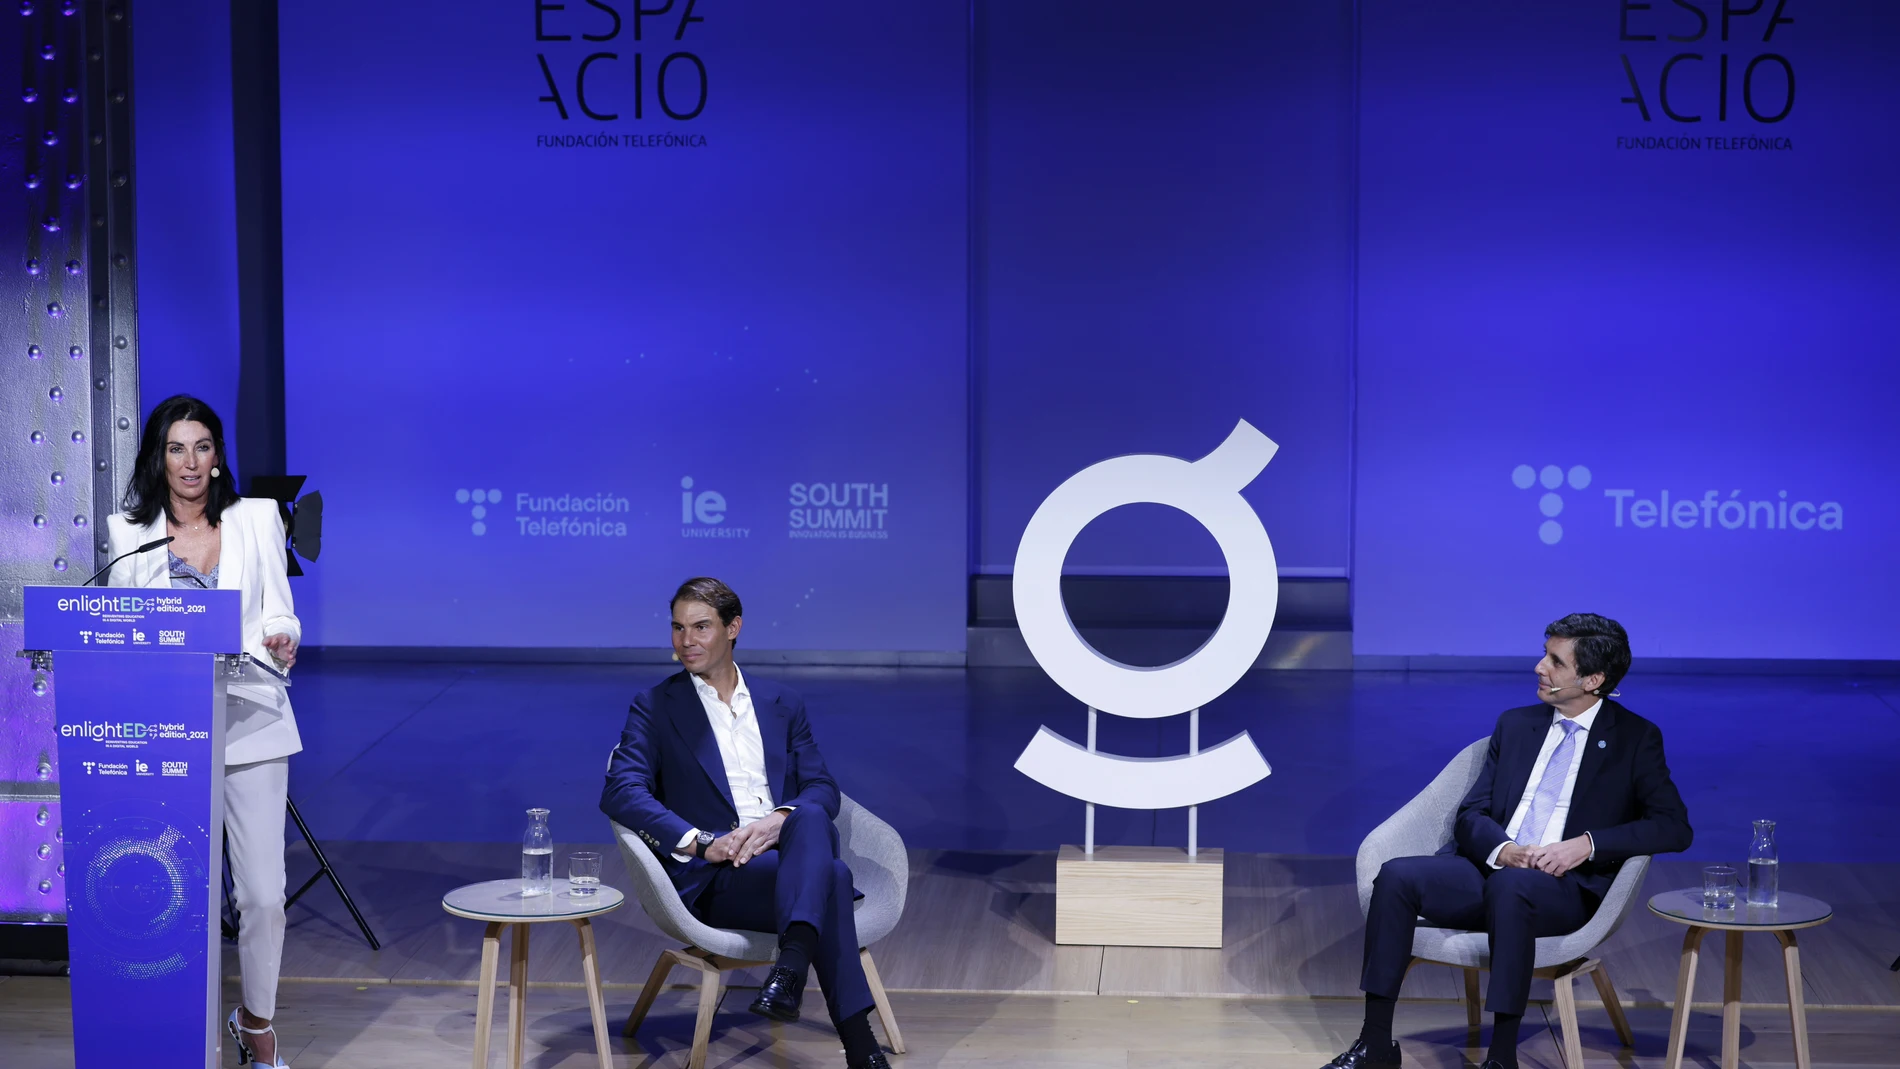 El presidente de Telefónica, José María Álvarez-Pallete, ha anunciado la creación de un gran Hub mundial de Innovación y Talento en la sede de la compañía.